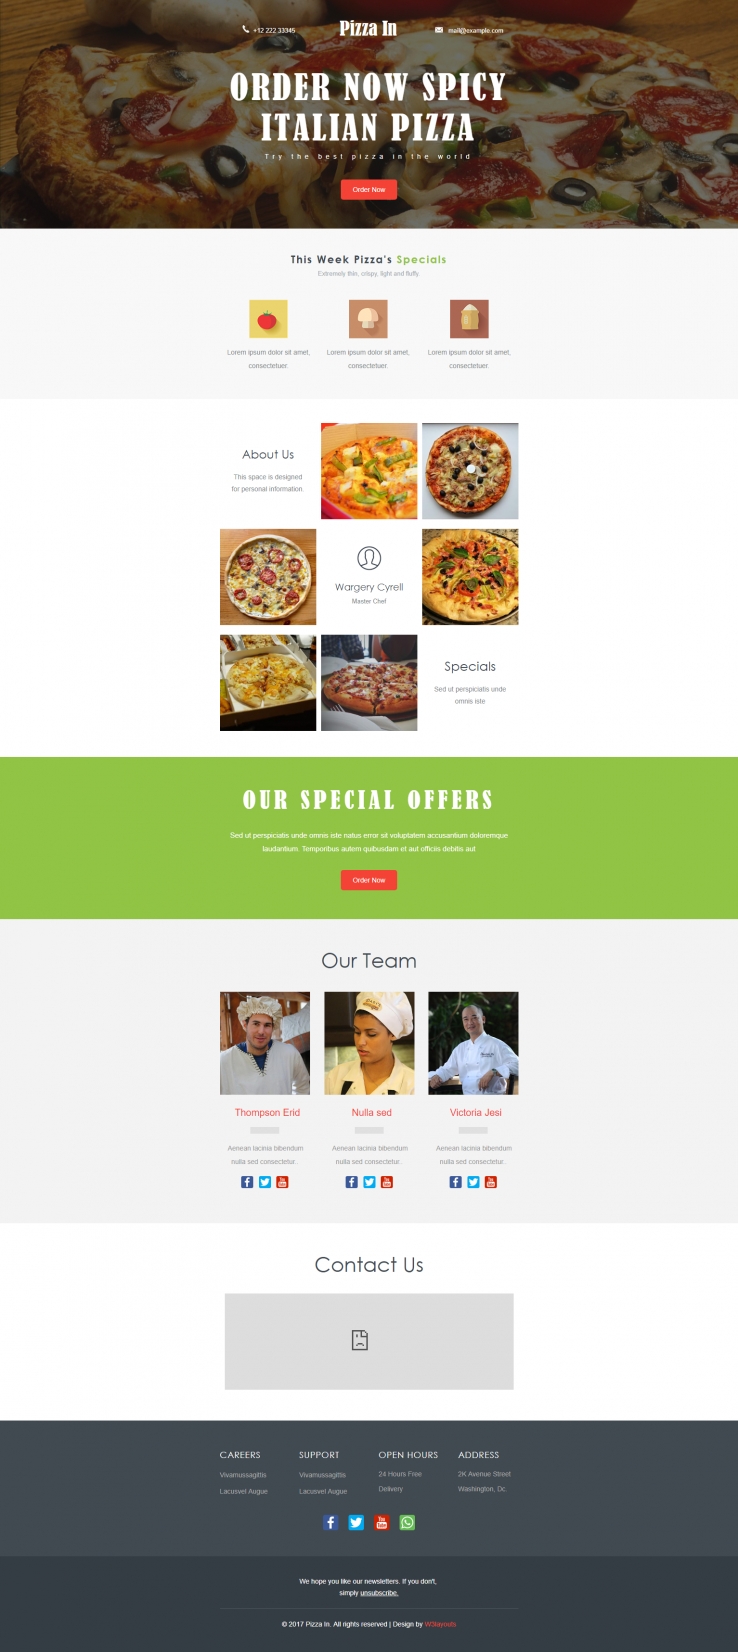 红色简洁风格的批萨餐厅整站网站源码下载